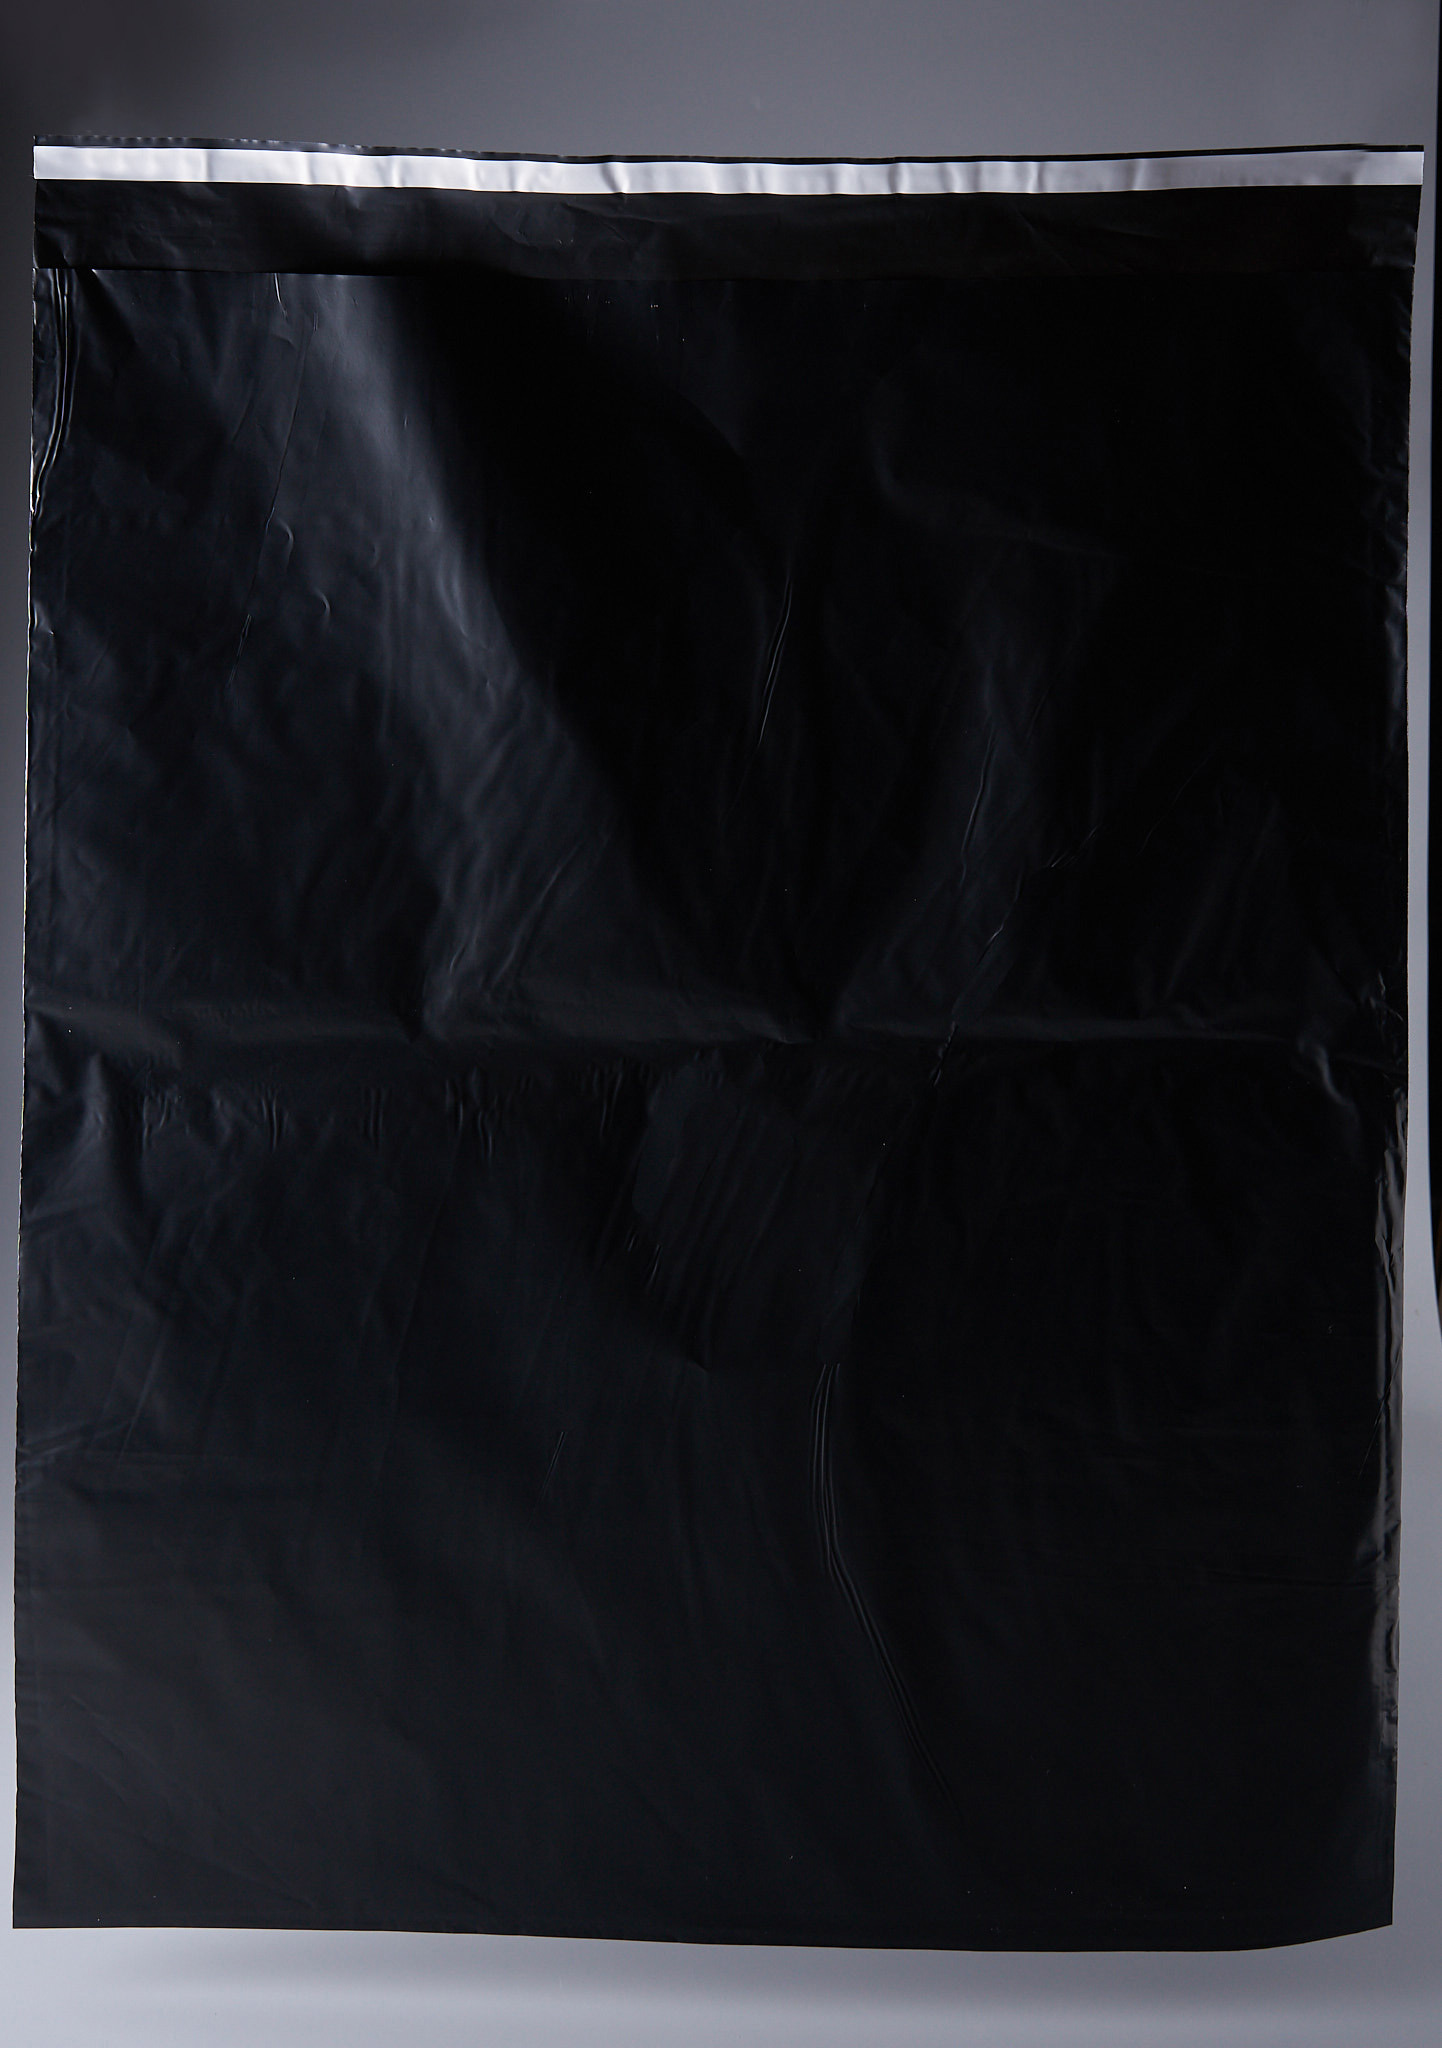 91017064 Пакет для компактного хранения 100 шт 50x60 см полиэтилен цвет черный STLM-0443019 PACK INNOVATION